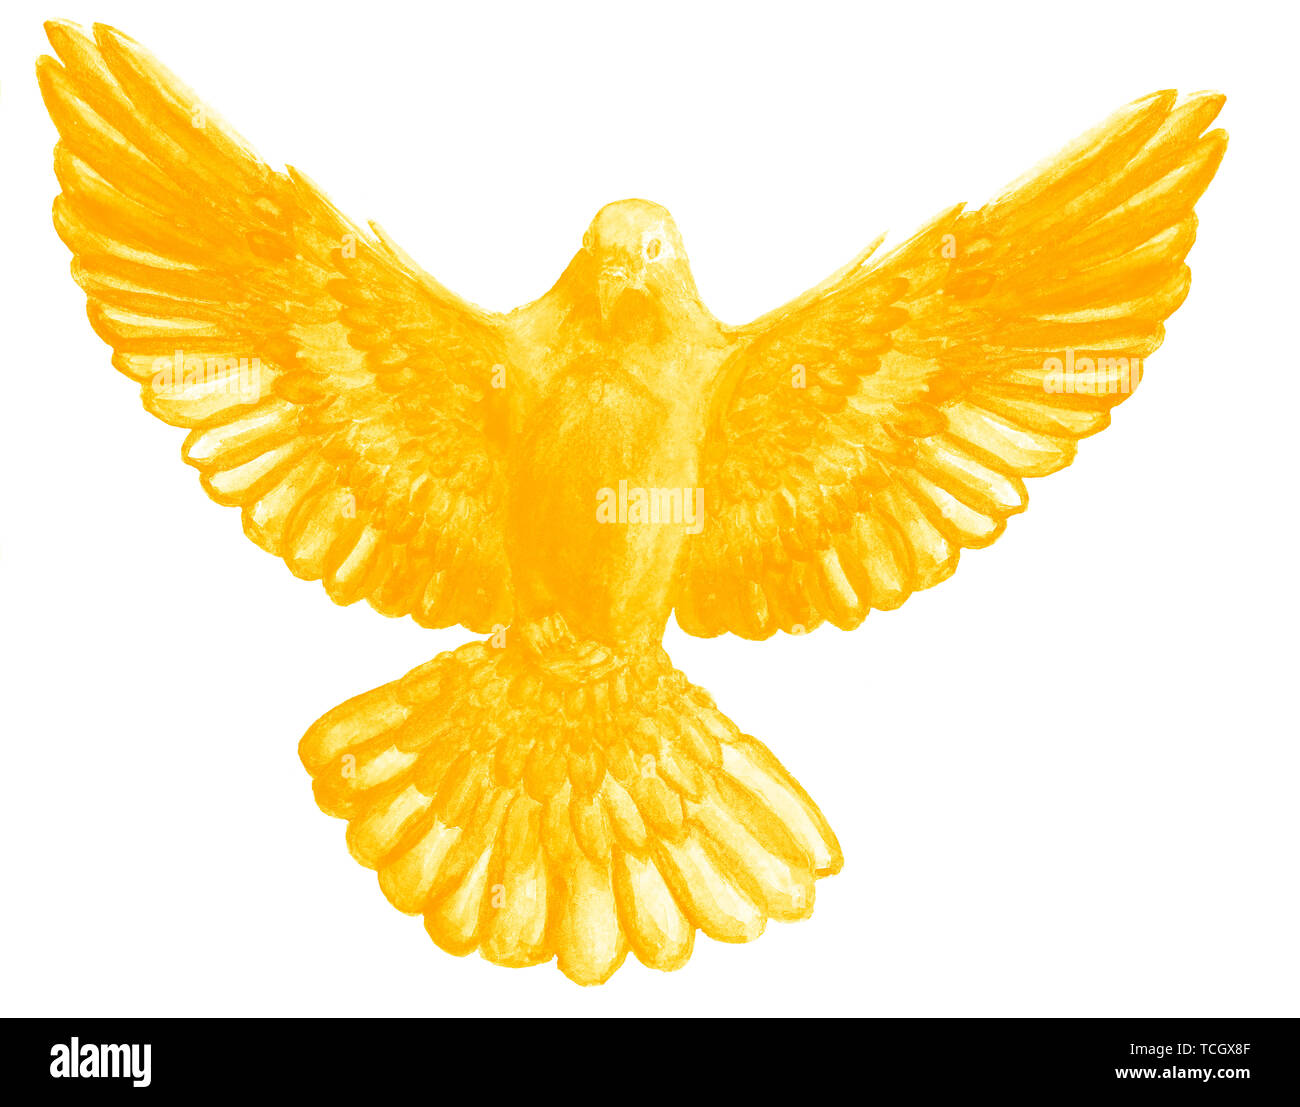 E Acquerello Acquerello digitale illustrazione di unicolor bird, piccione in golden, colore giallo, simbolo dello Spirito Santo, su sfondo bianco. Foto Stock